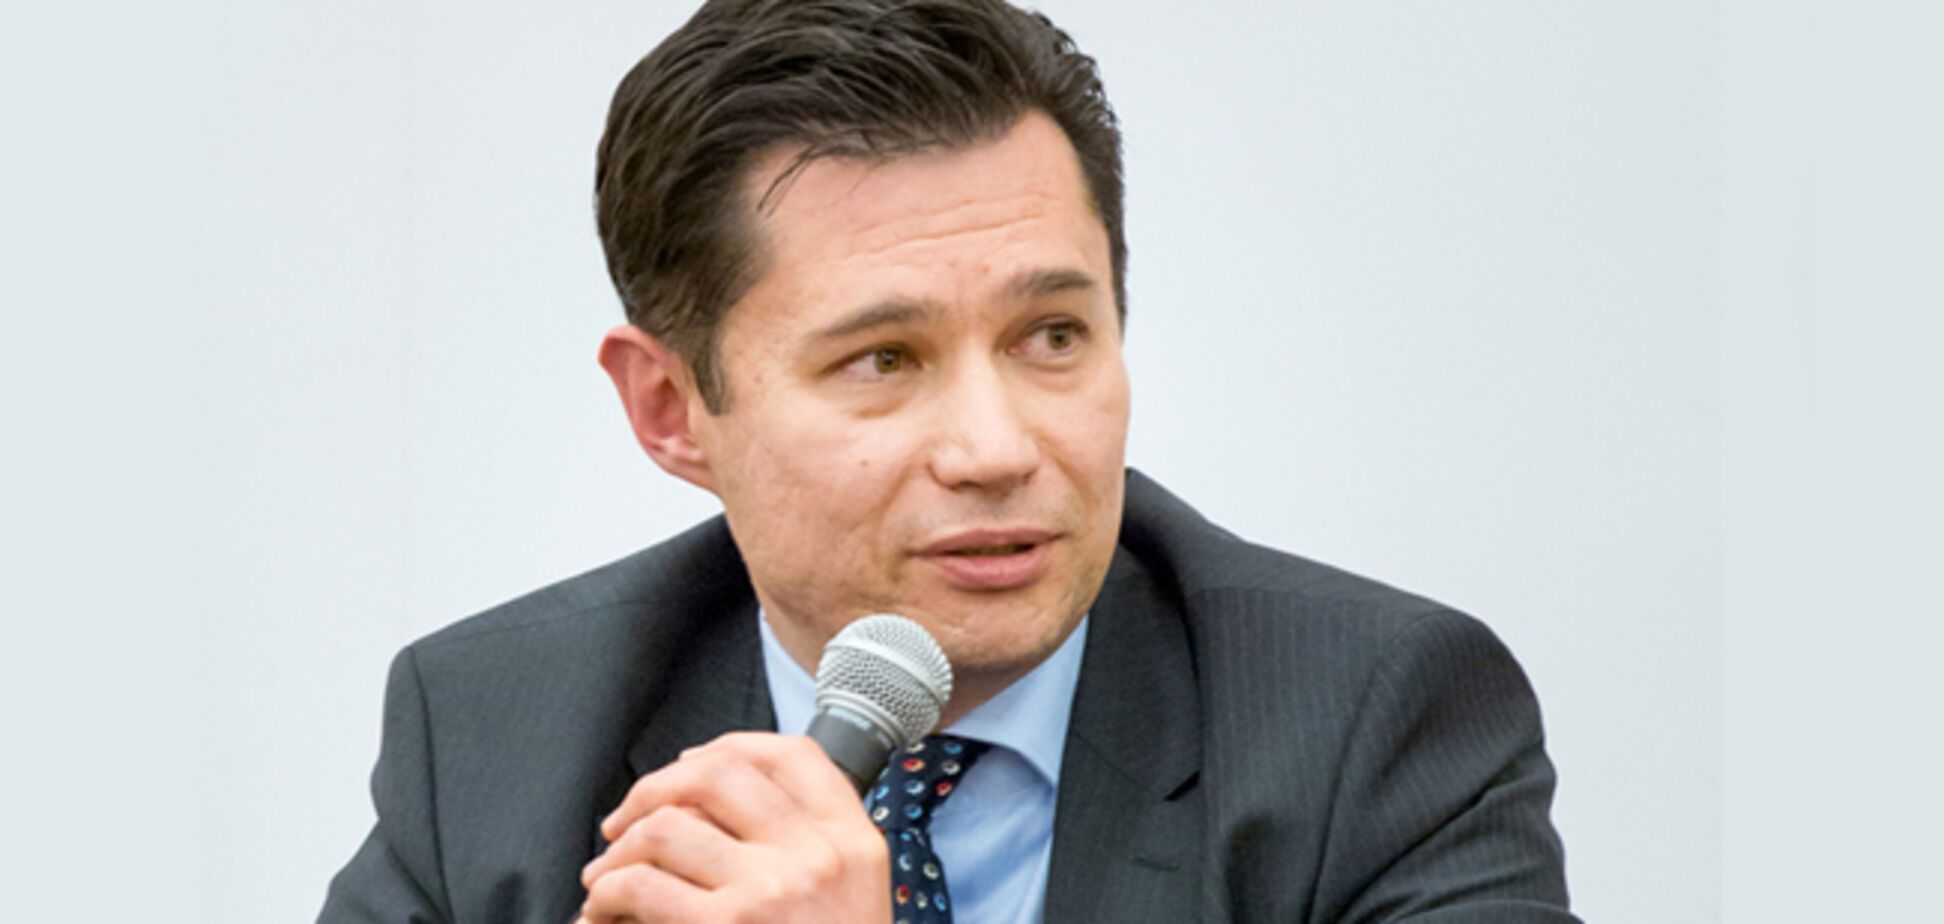 Украинский посол жестко ответил австрийскому магнату на призыв понять Россию